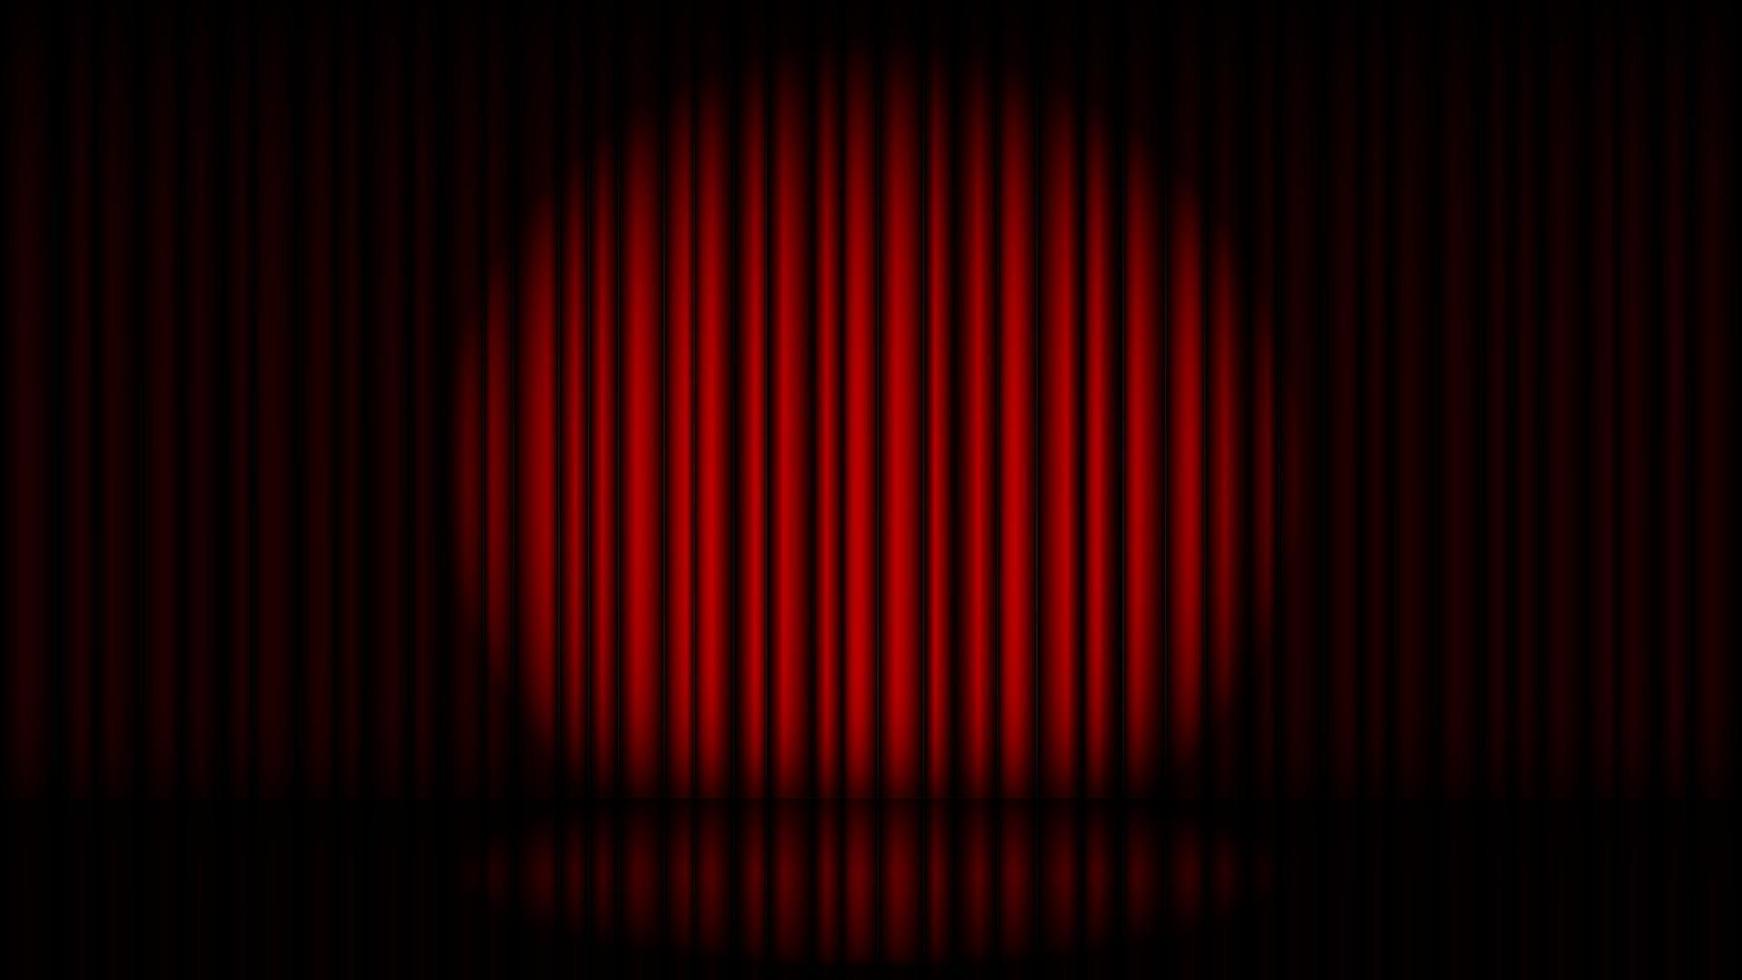 Bühne mit rotem Vorhang und Scheinwerfervektorillustration vektor